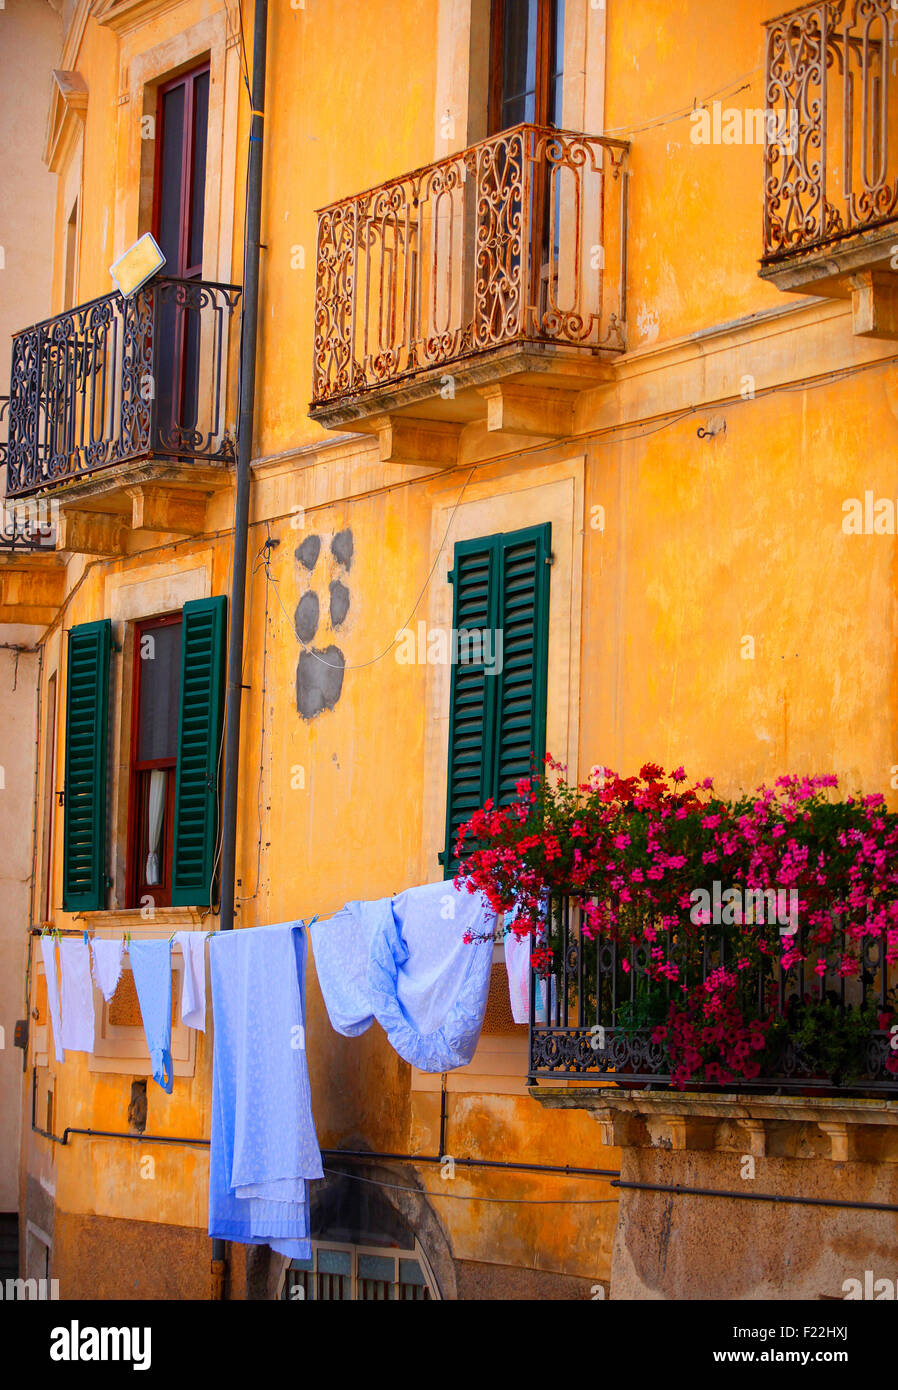 Fontecchia, Italia. Persiane e balcone con appeso un lavaggio. Foto Stock